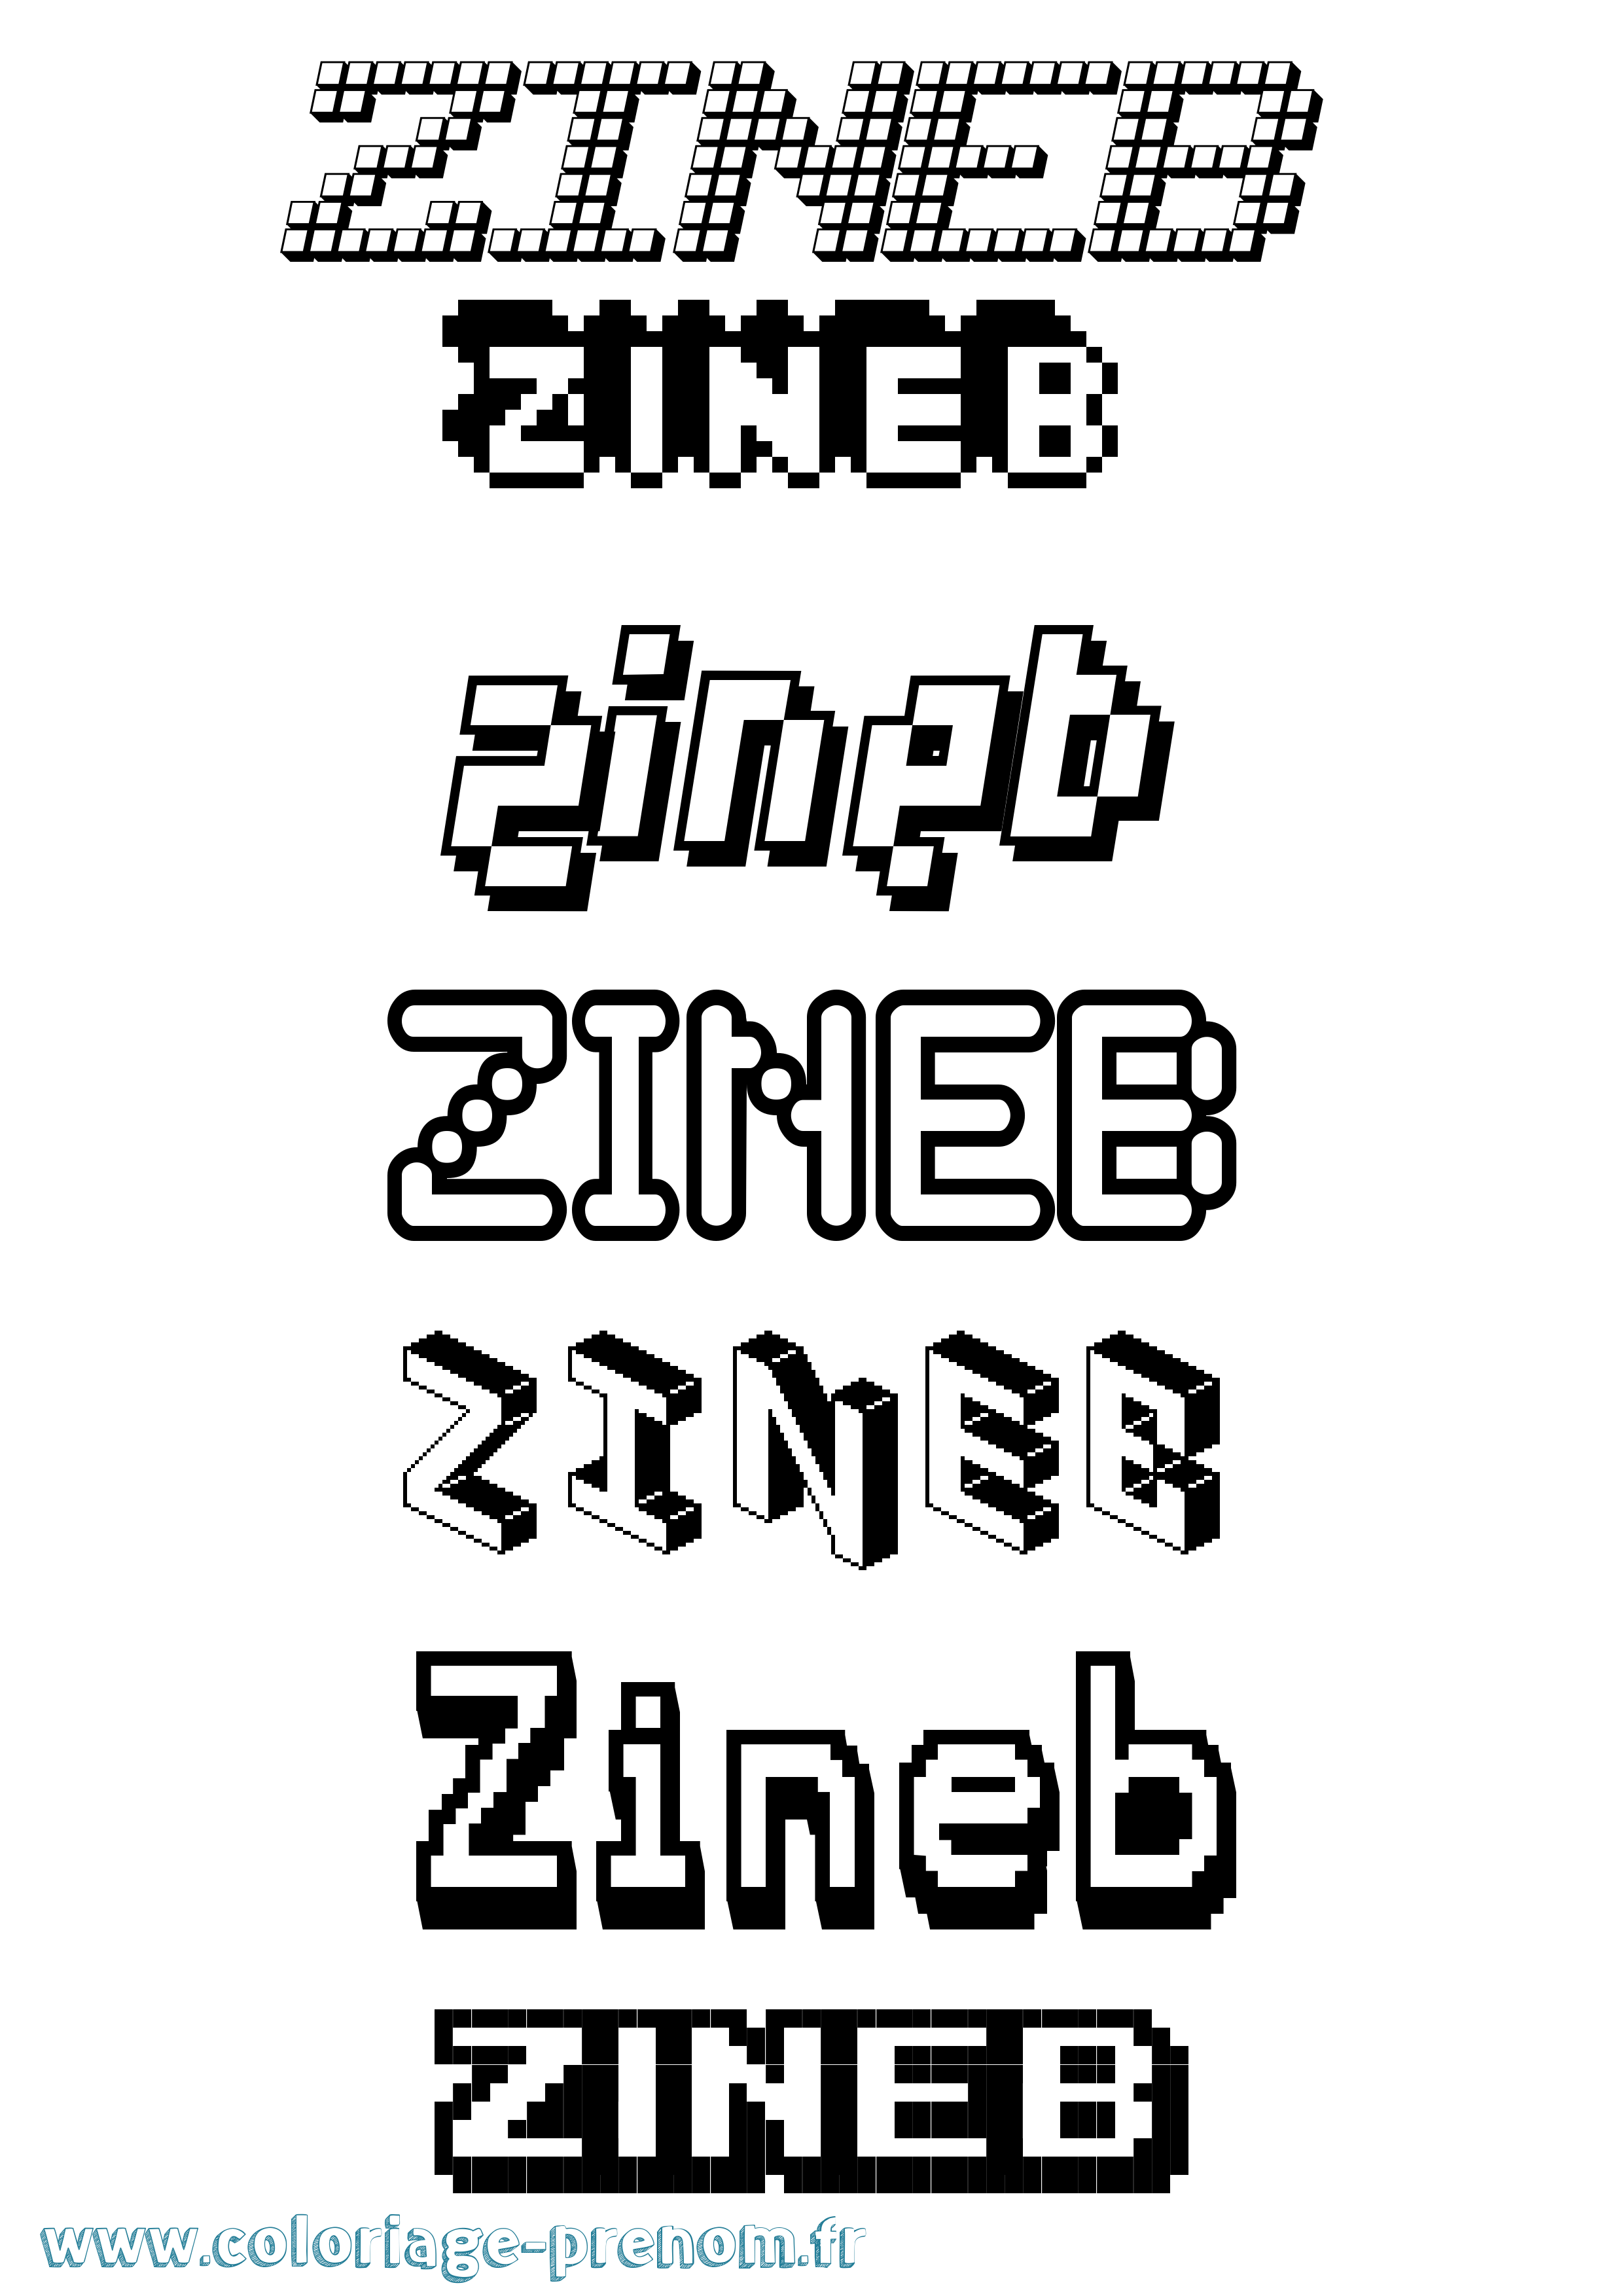 Coloriage prénom Zineb Pixel